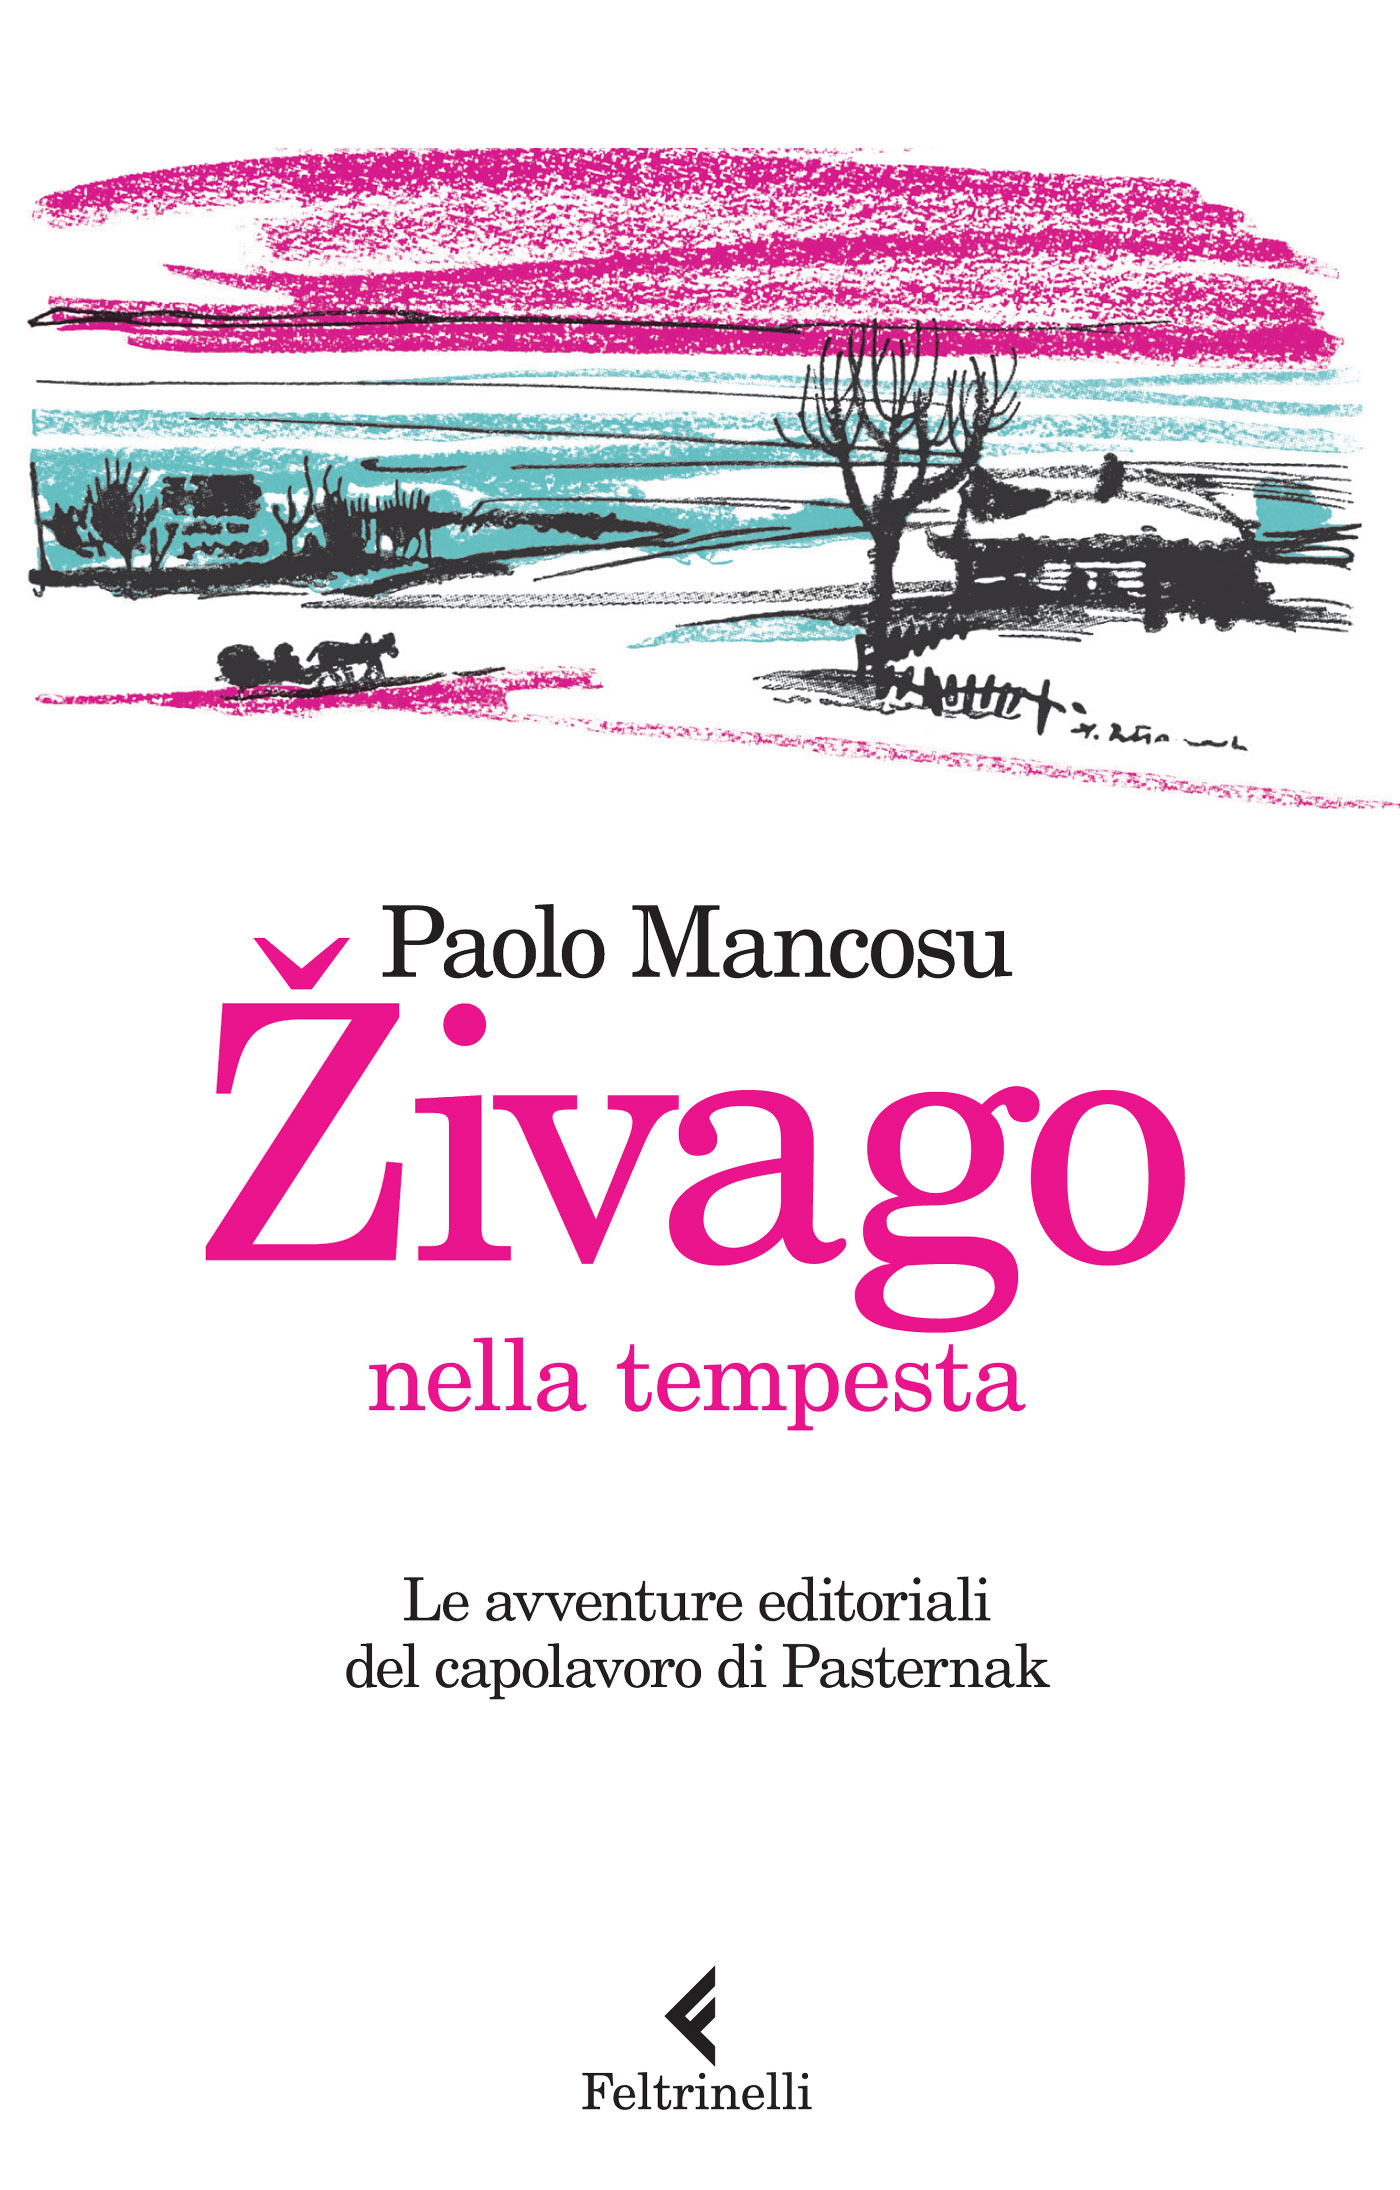 La copertina del libro “Zivago nella tempesta” edito da Feltrinelli (Foto: ufficio stampa)